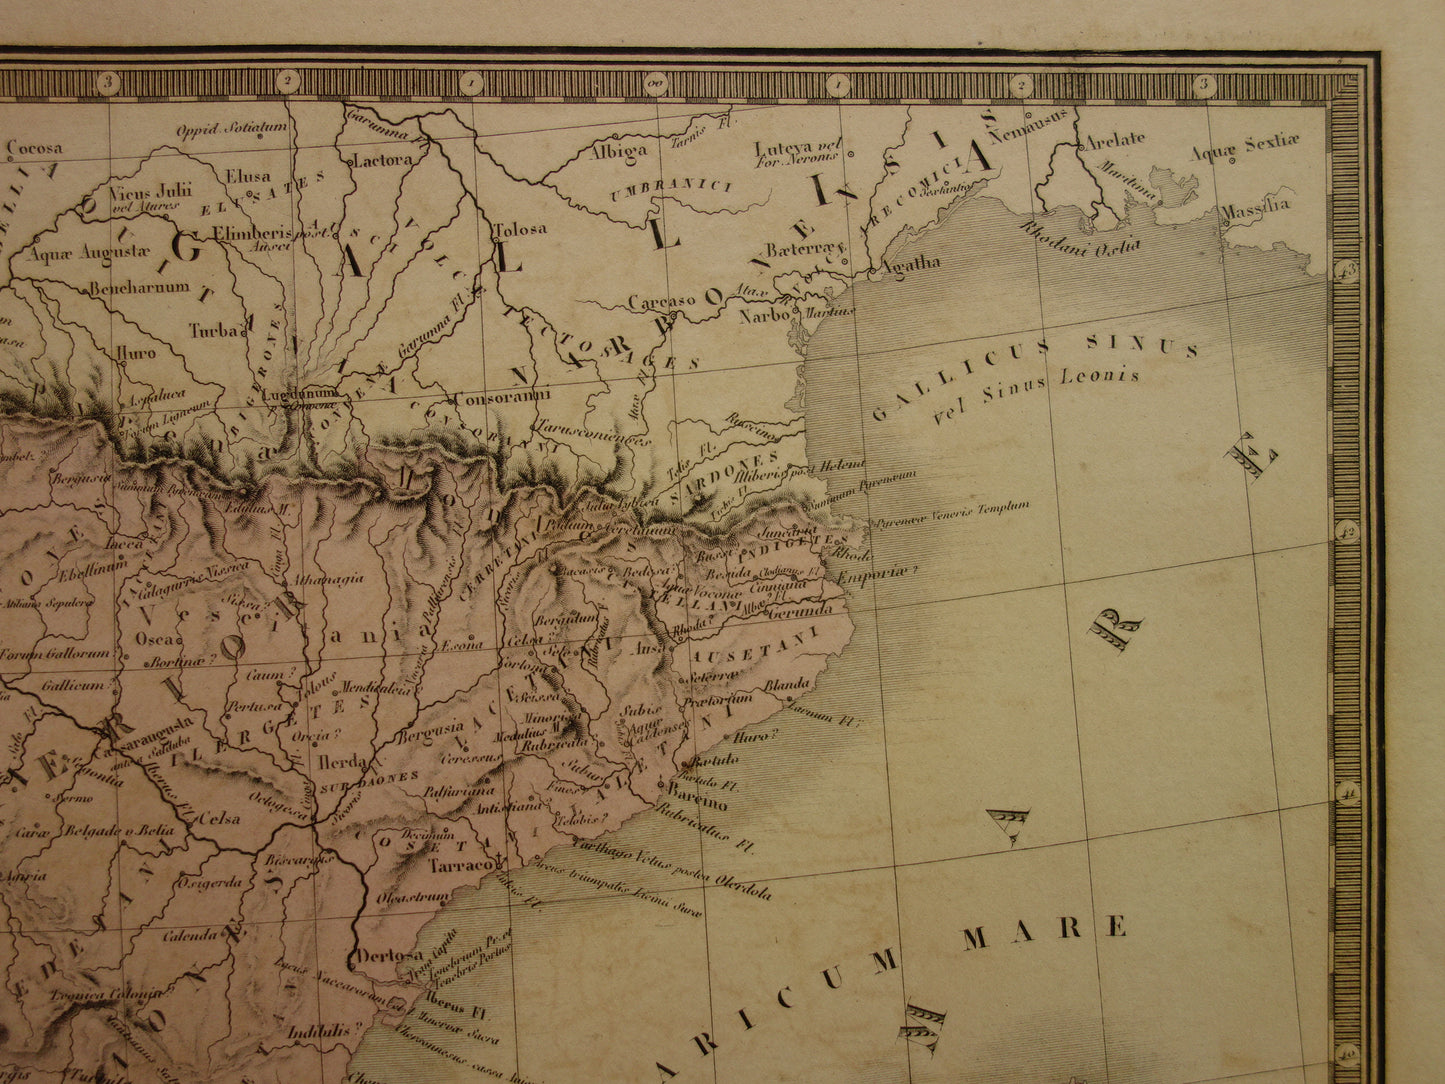 SPANJE oude kaart van Spanje en Portugal in de oudheid 1875 originele grote antieke landkaart Hispania in Romeinse tijd